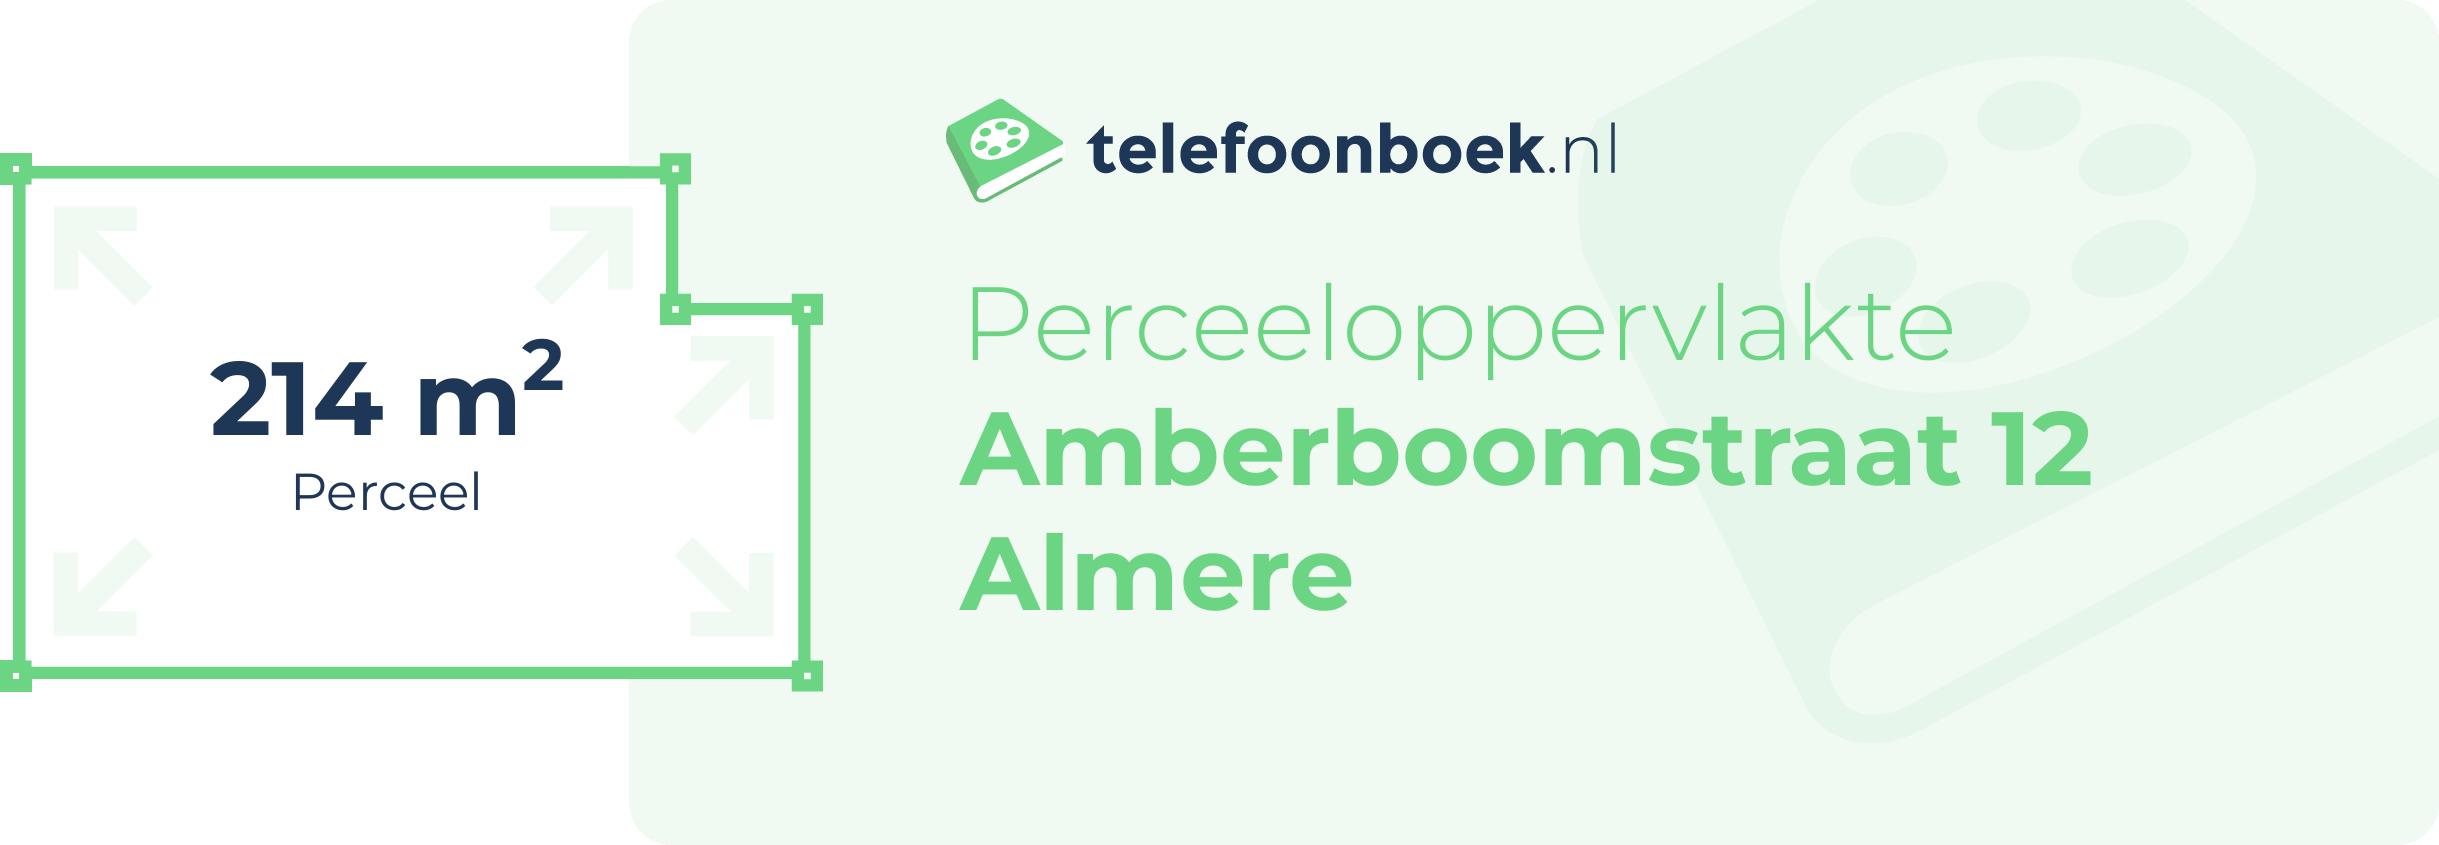 Perceeloppervlakte Amberboomstraat 12 Almere